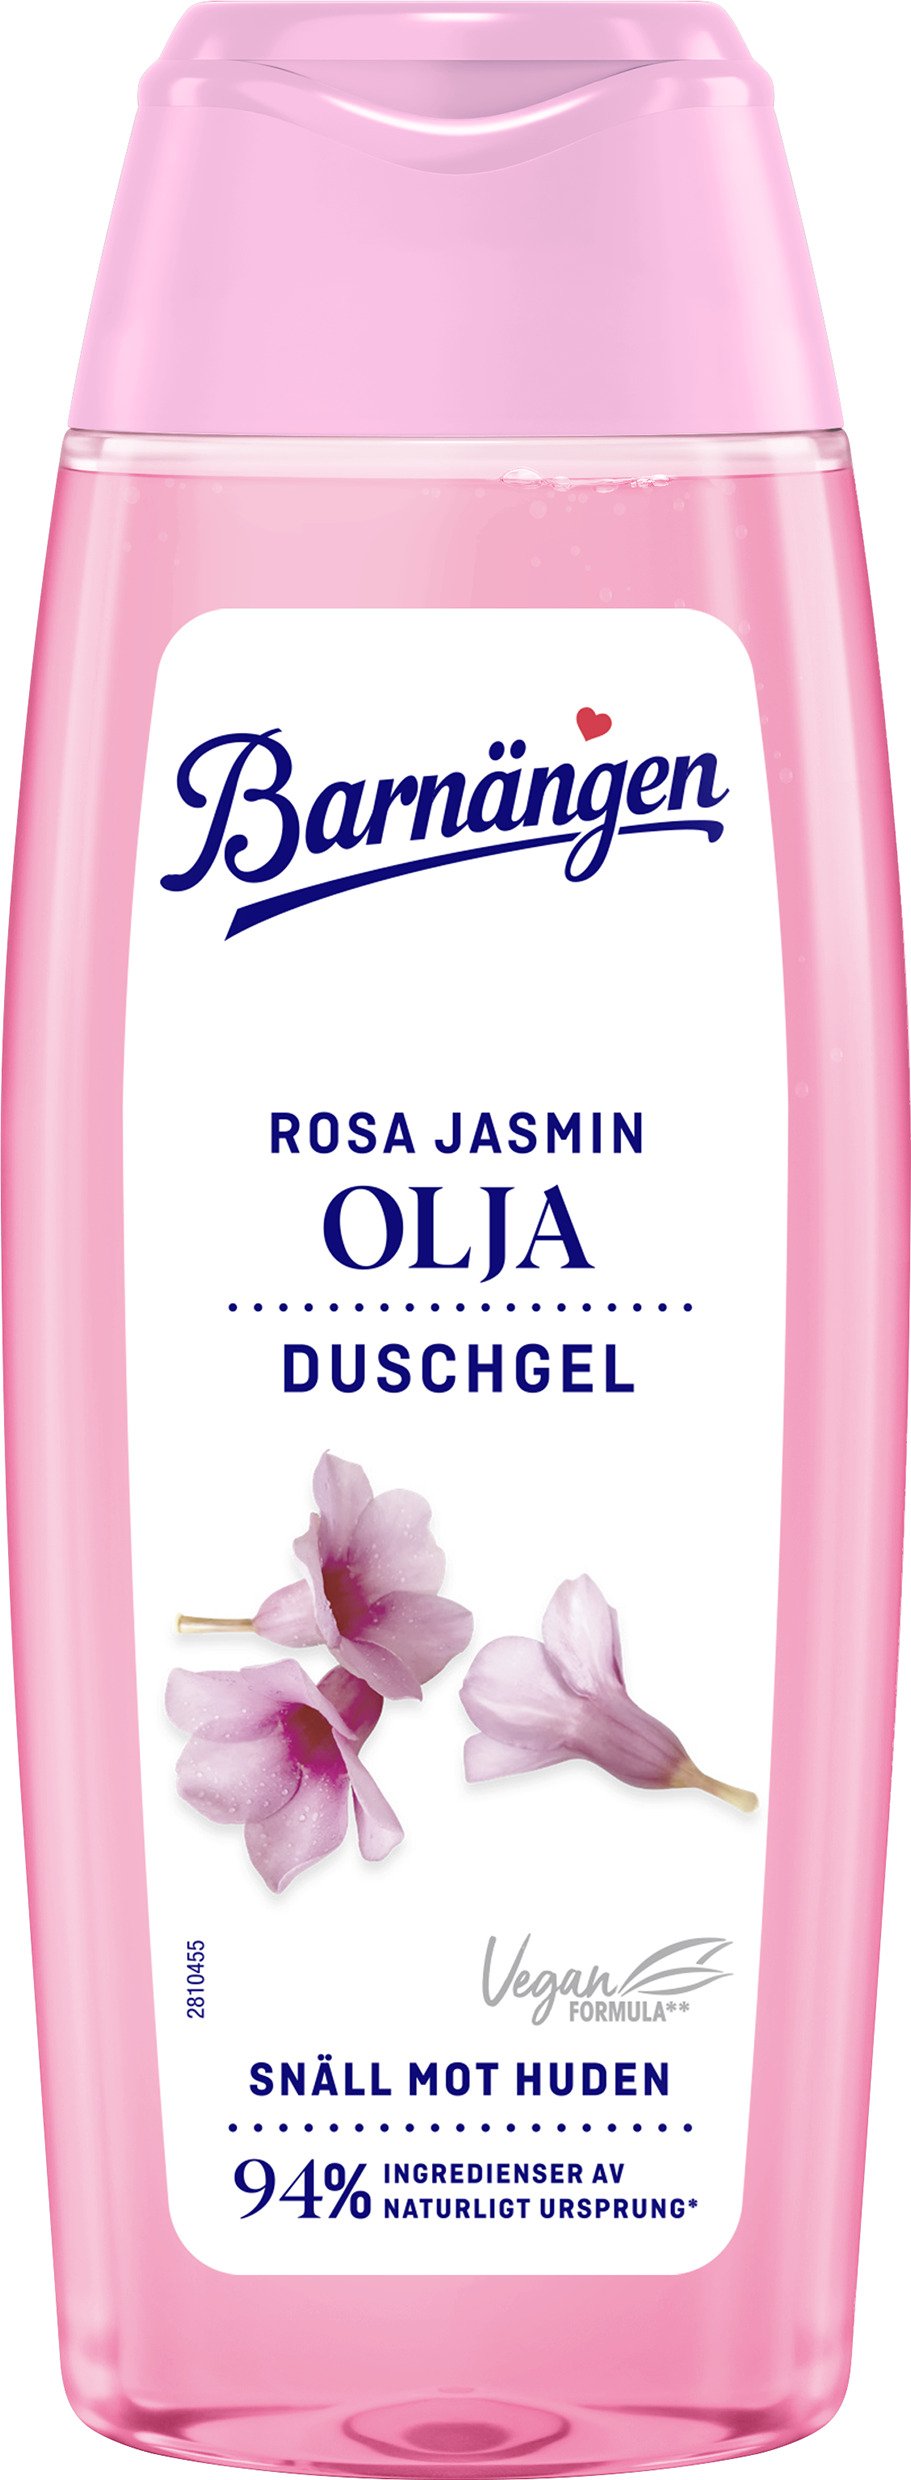 Barnängen Duschgel & Olja Rosa Jasmin 250 ml